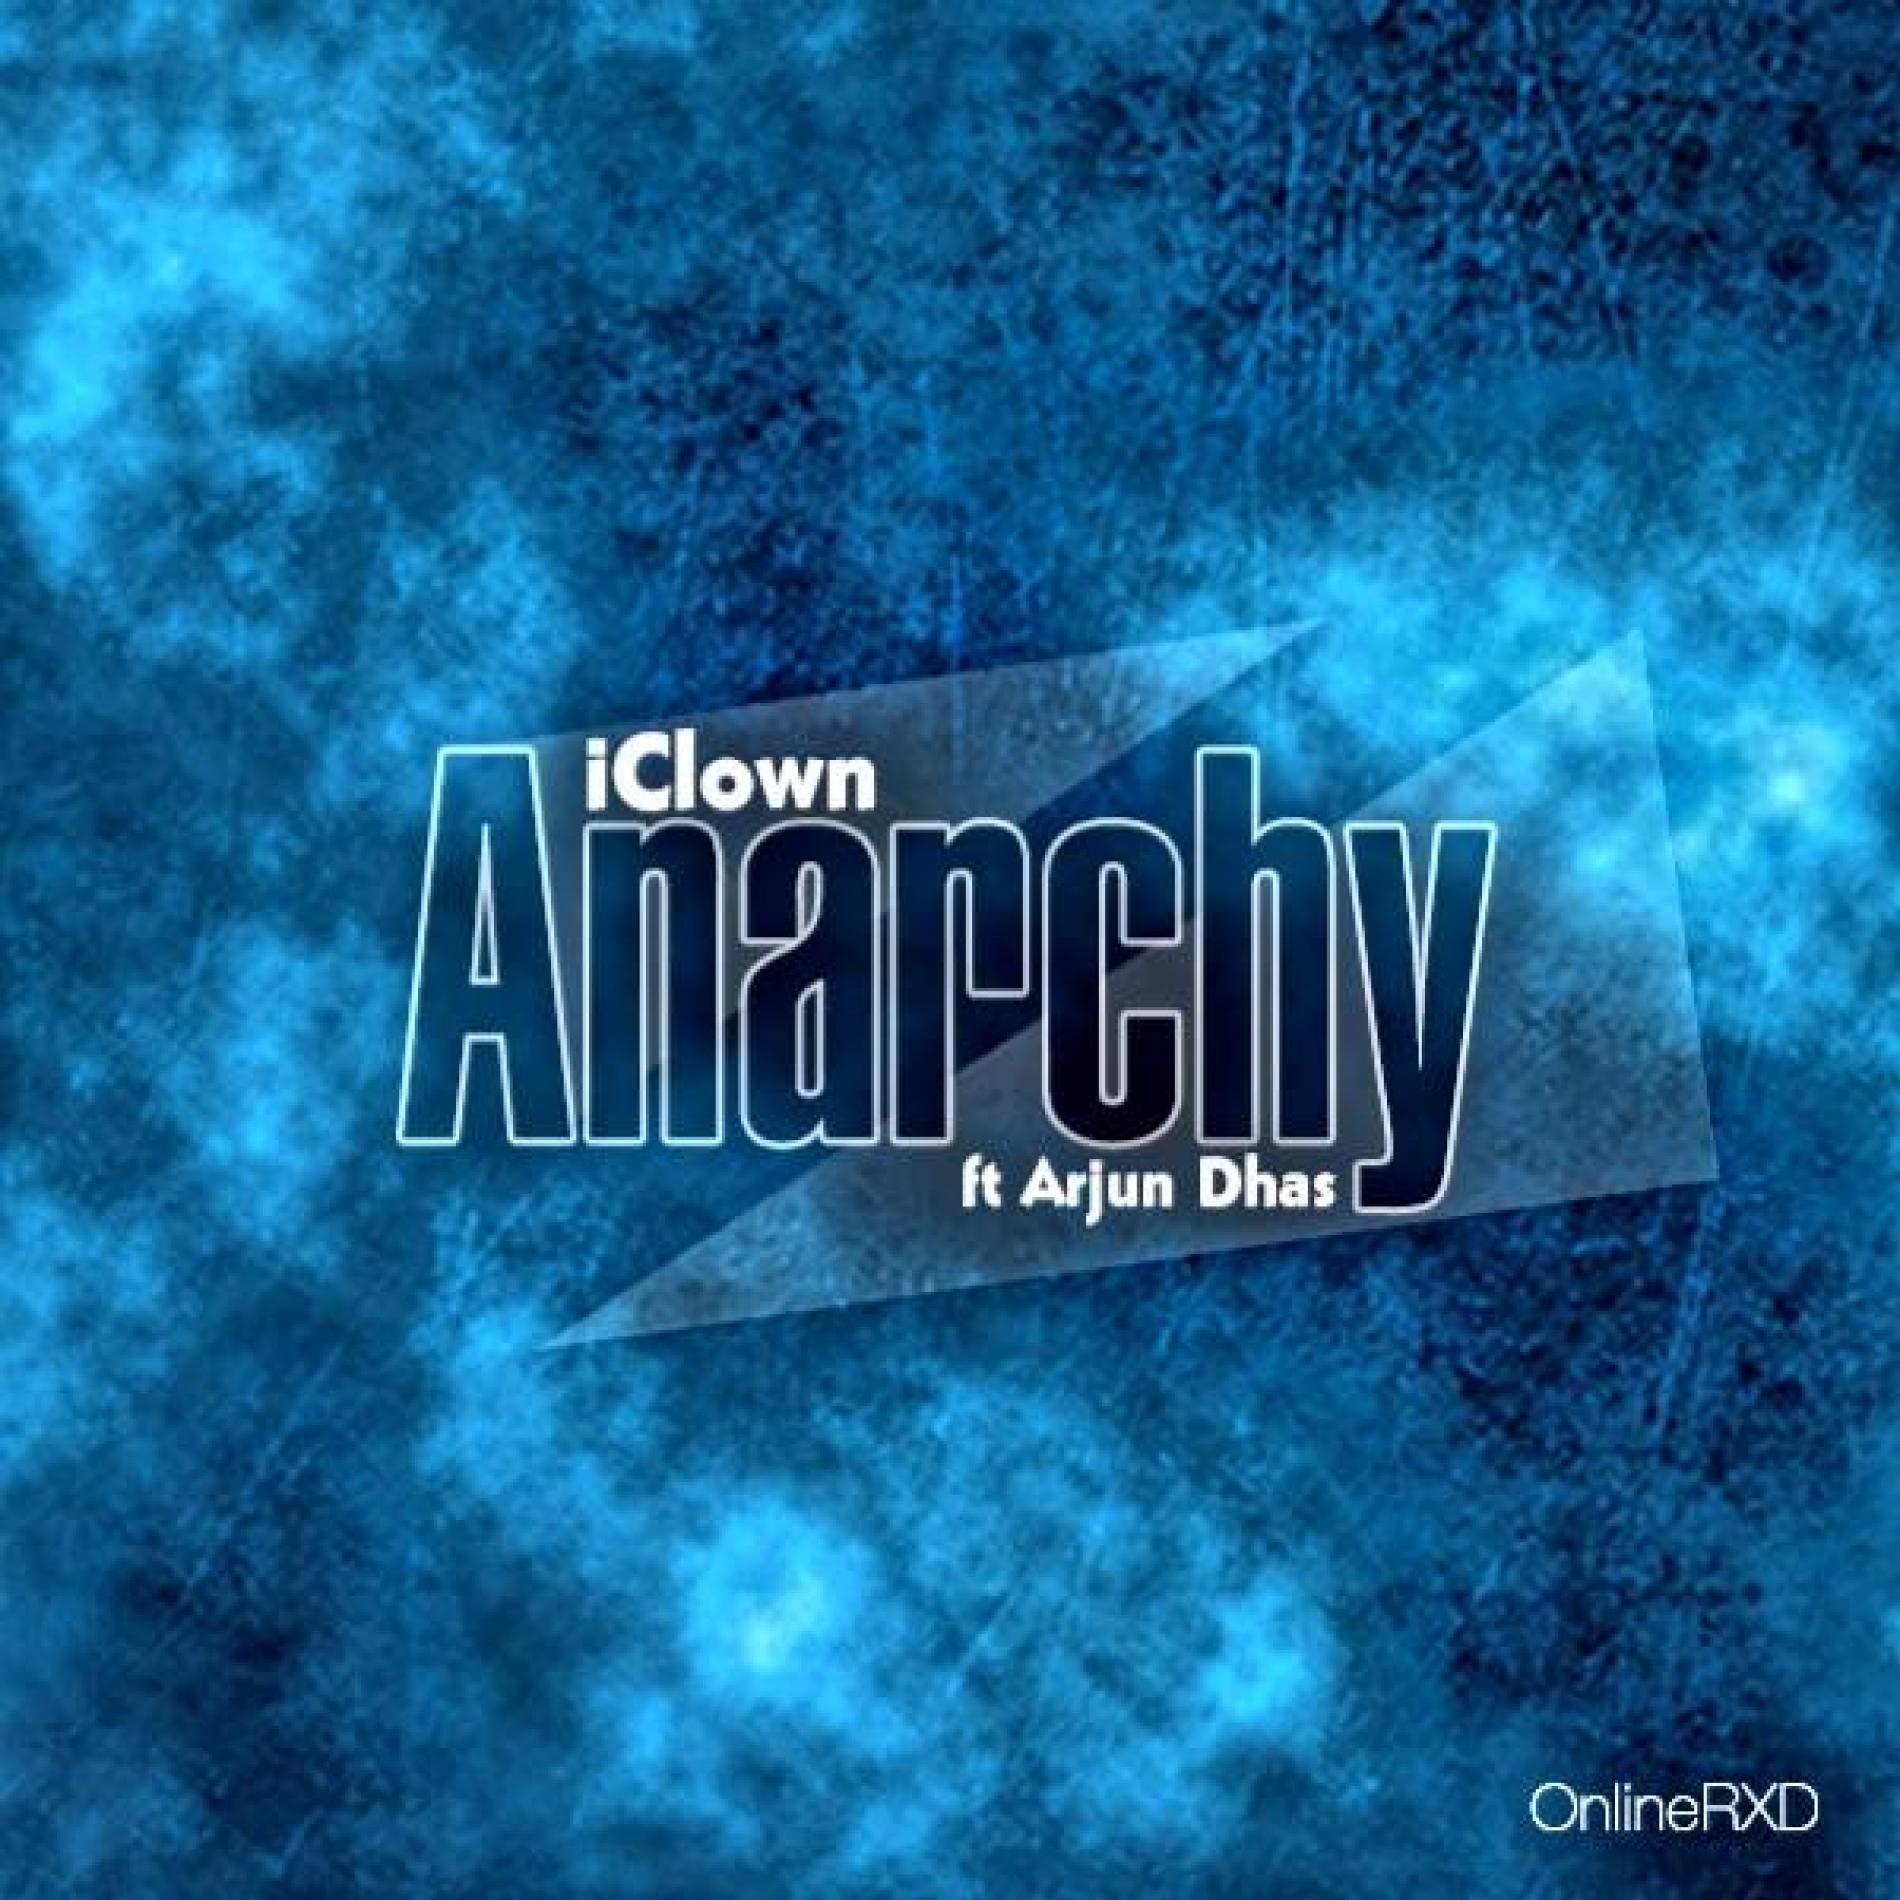 iClown Ft Arjun Dhas – Anarchy